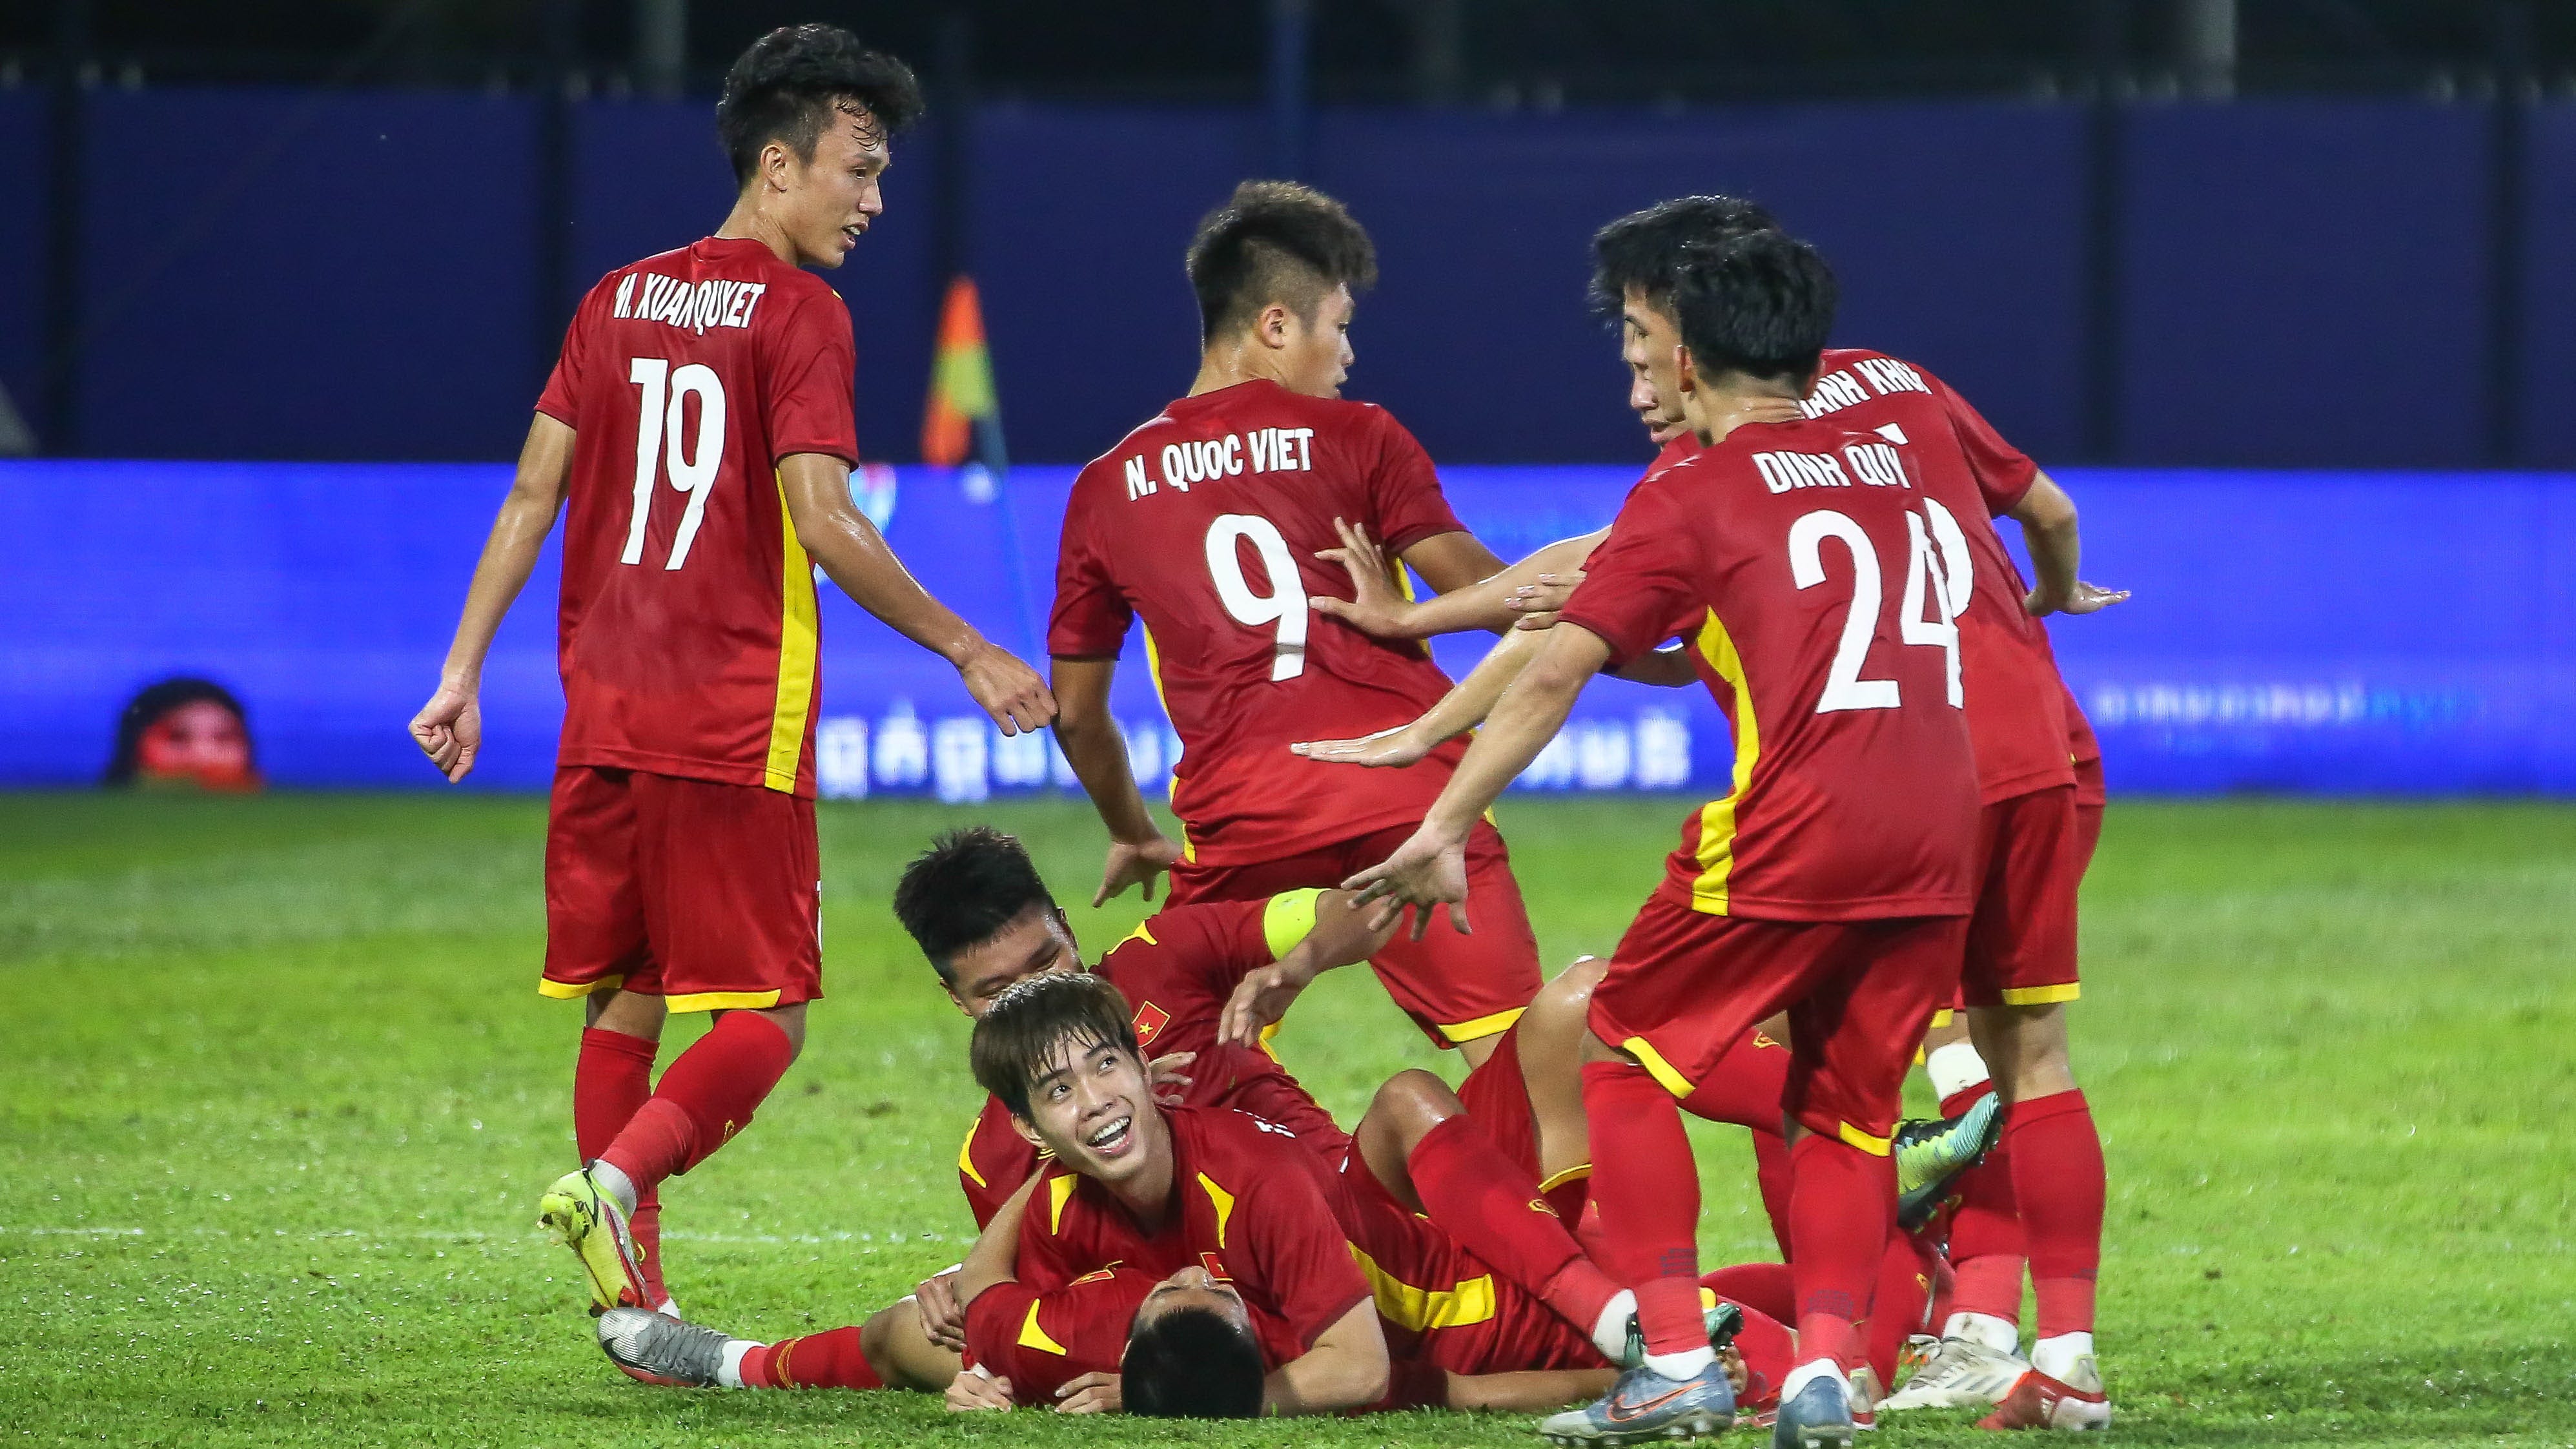 Nguyen Trung Thanh U23 Vietnam U23 Thai Lan 2022 AFF U23 Championship